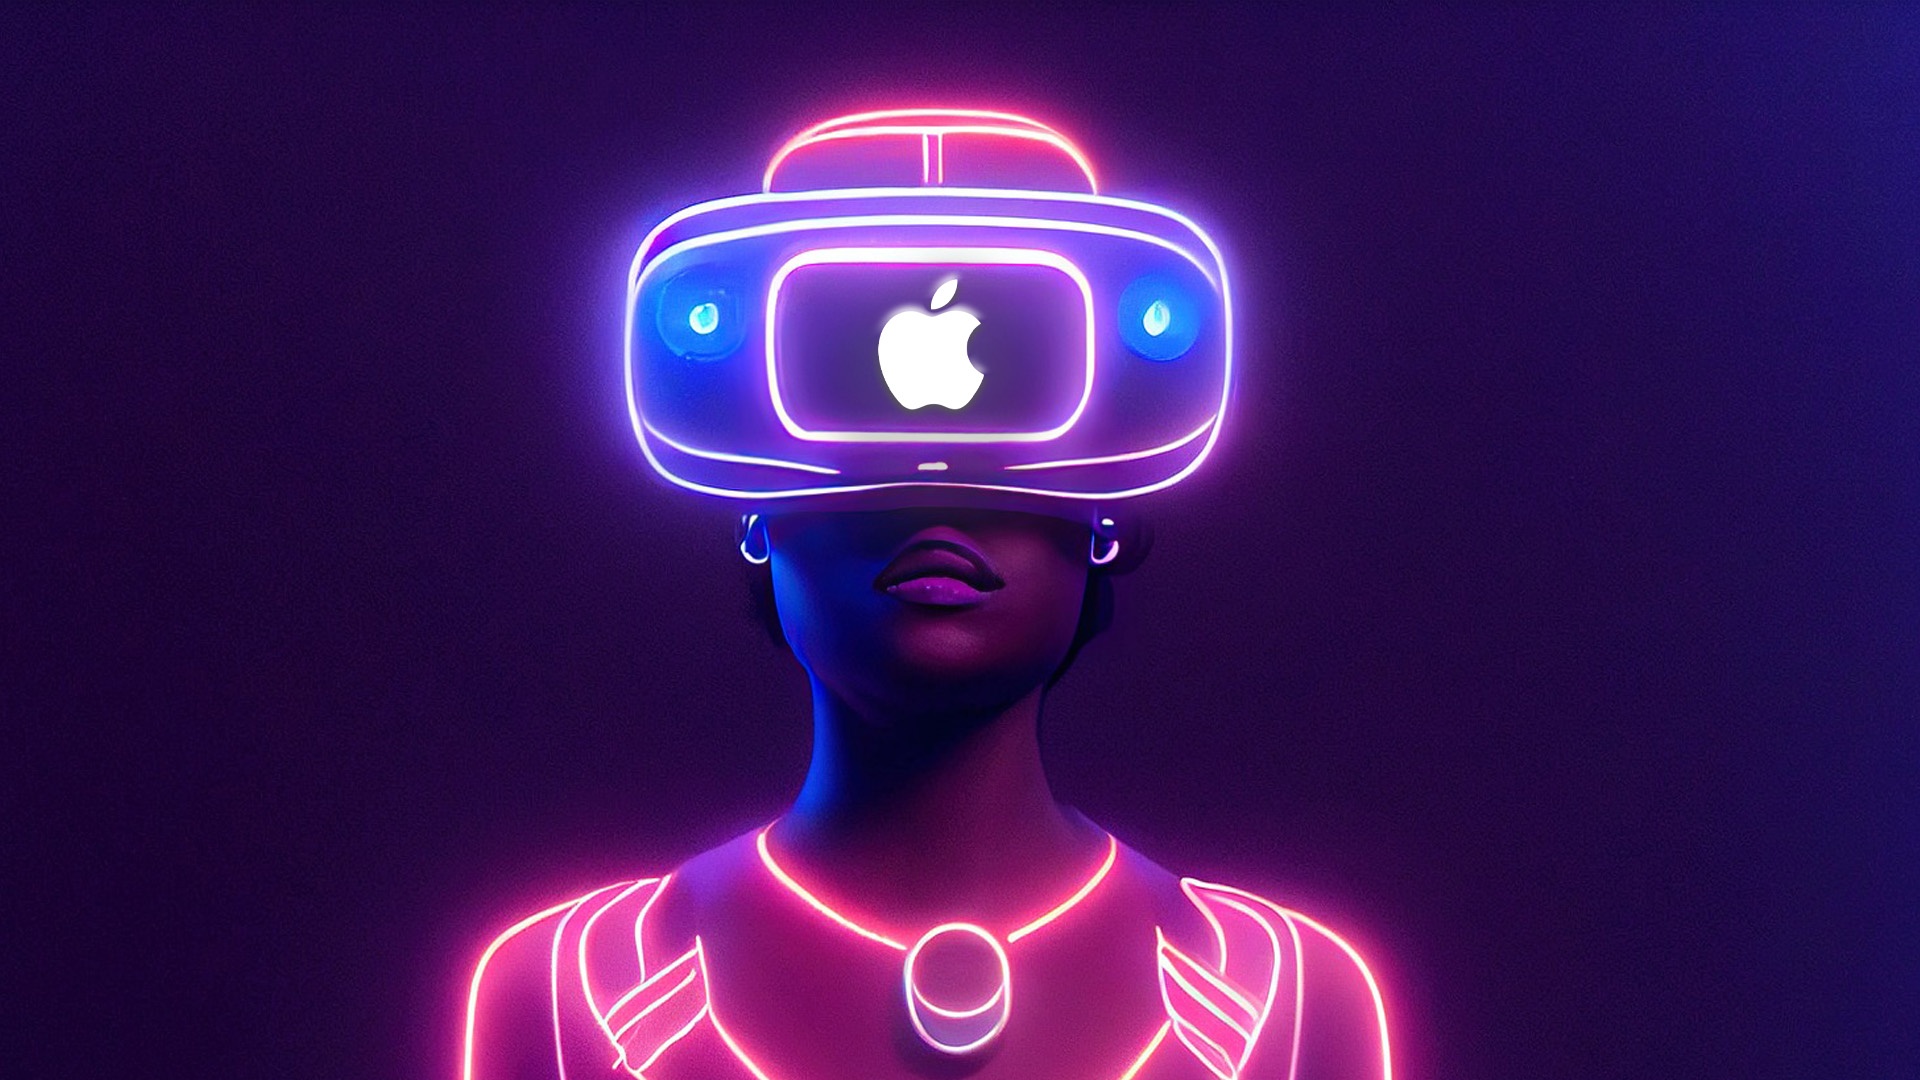 #Apple braucht mehr Zeit: Vorstellung von Mixed-Reality-Headset verzögert sich weiter